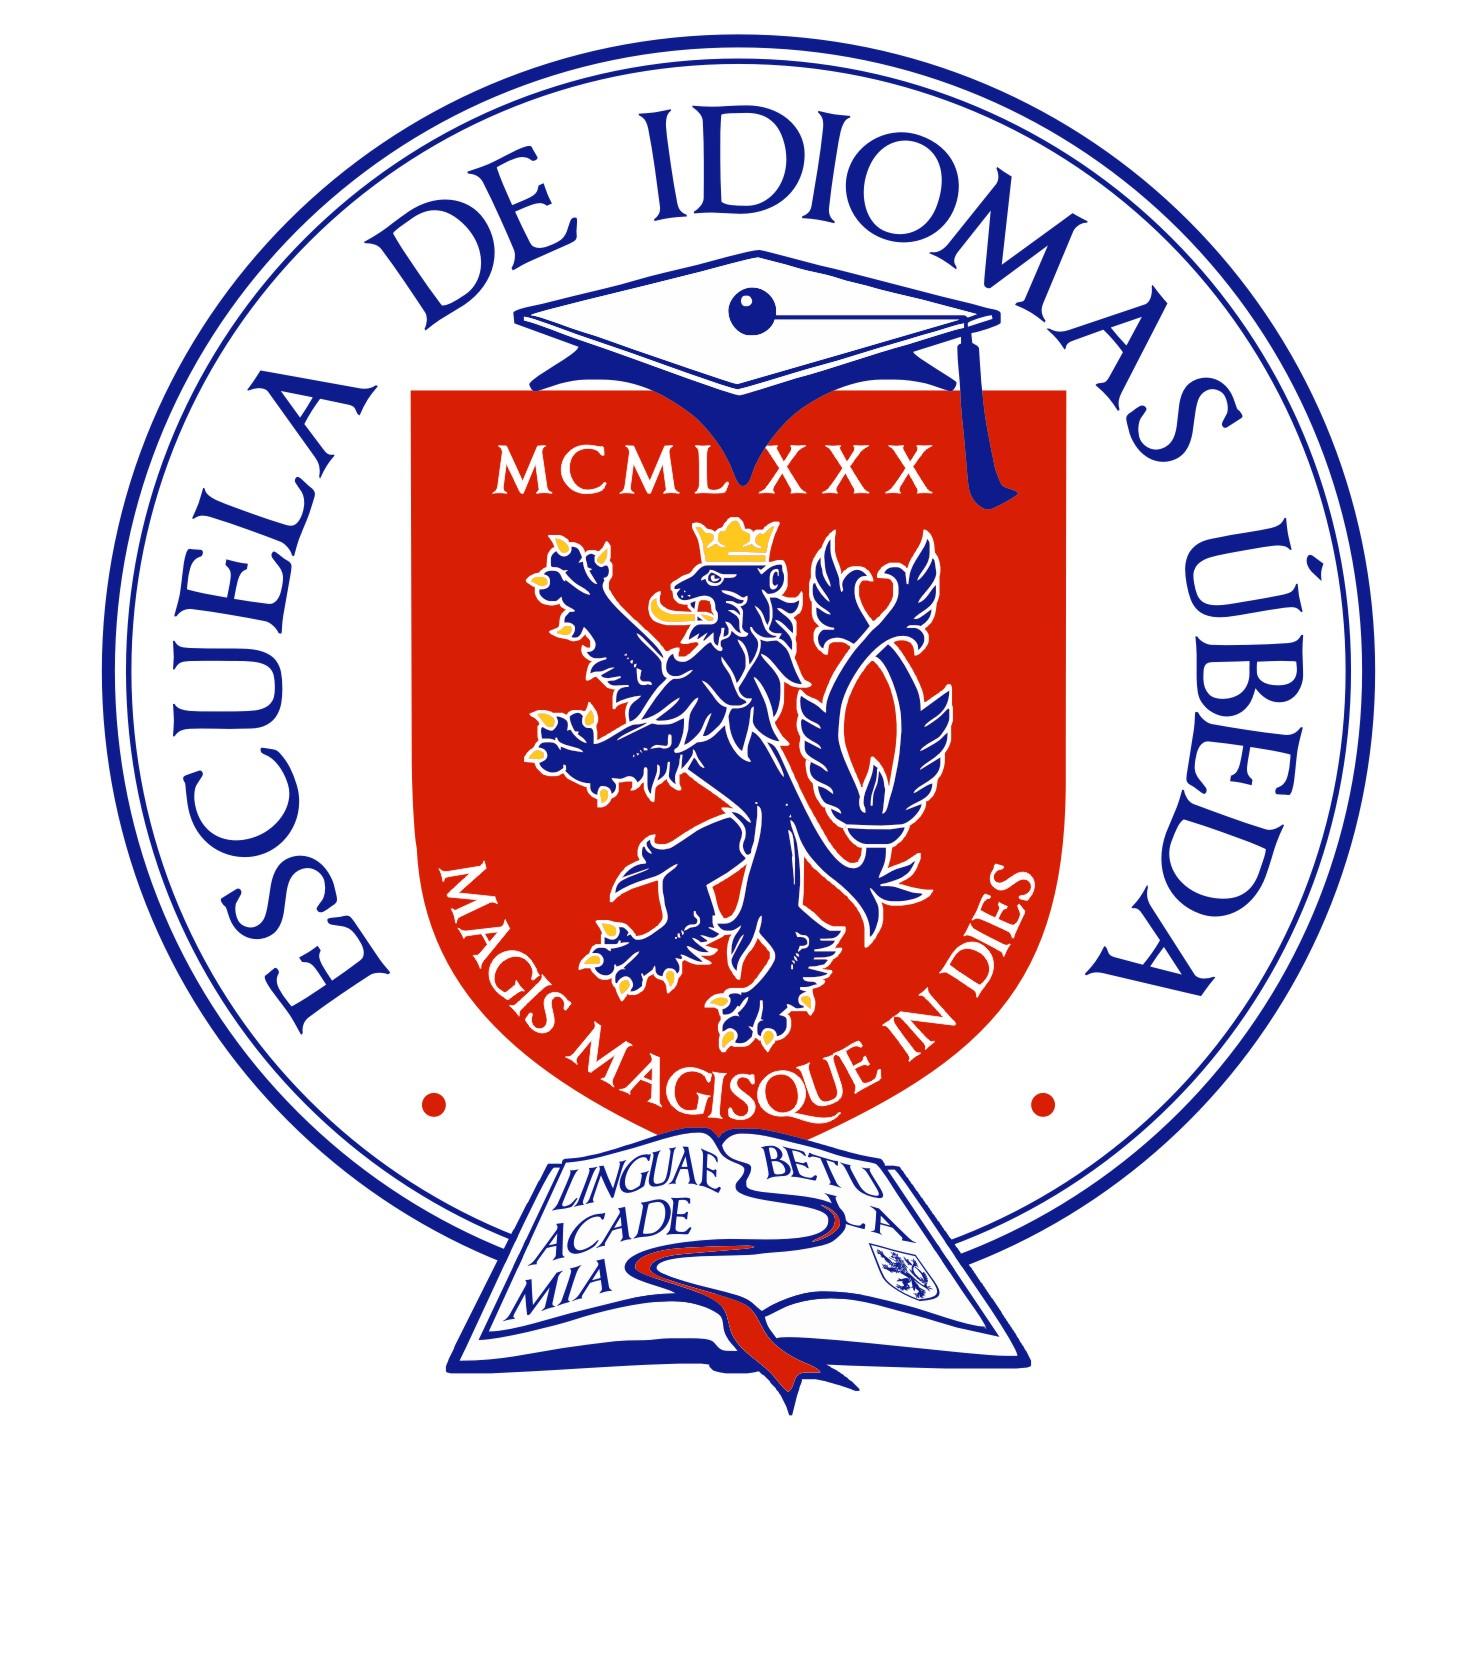 Euroidiomas - Escuela de Idiomas Ubeda